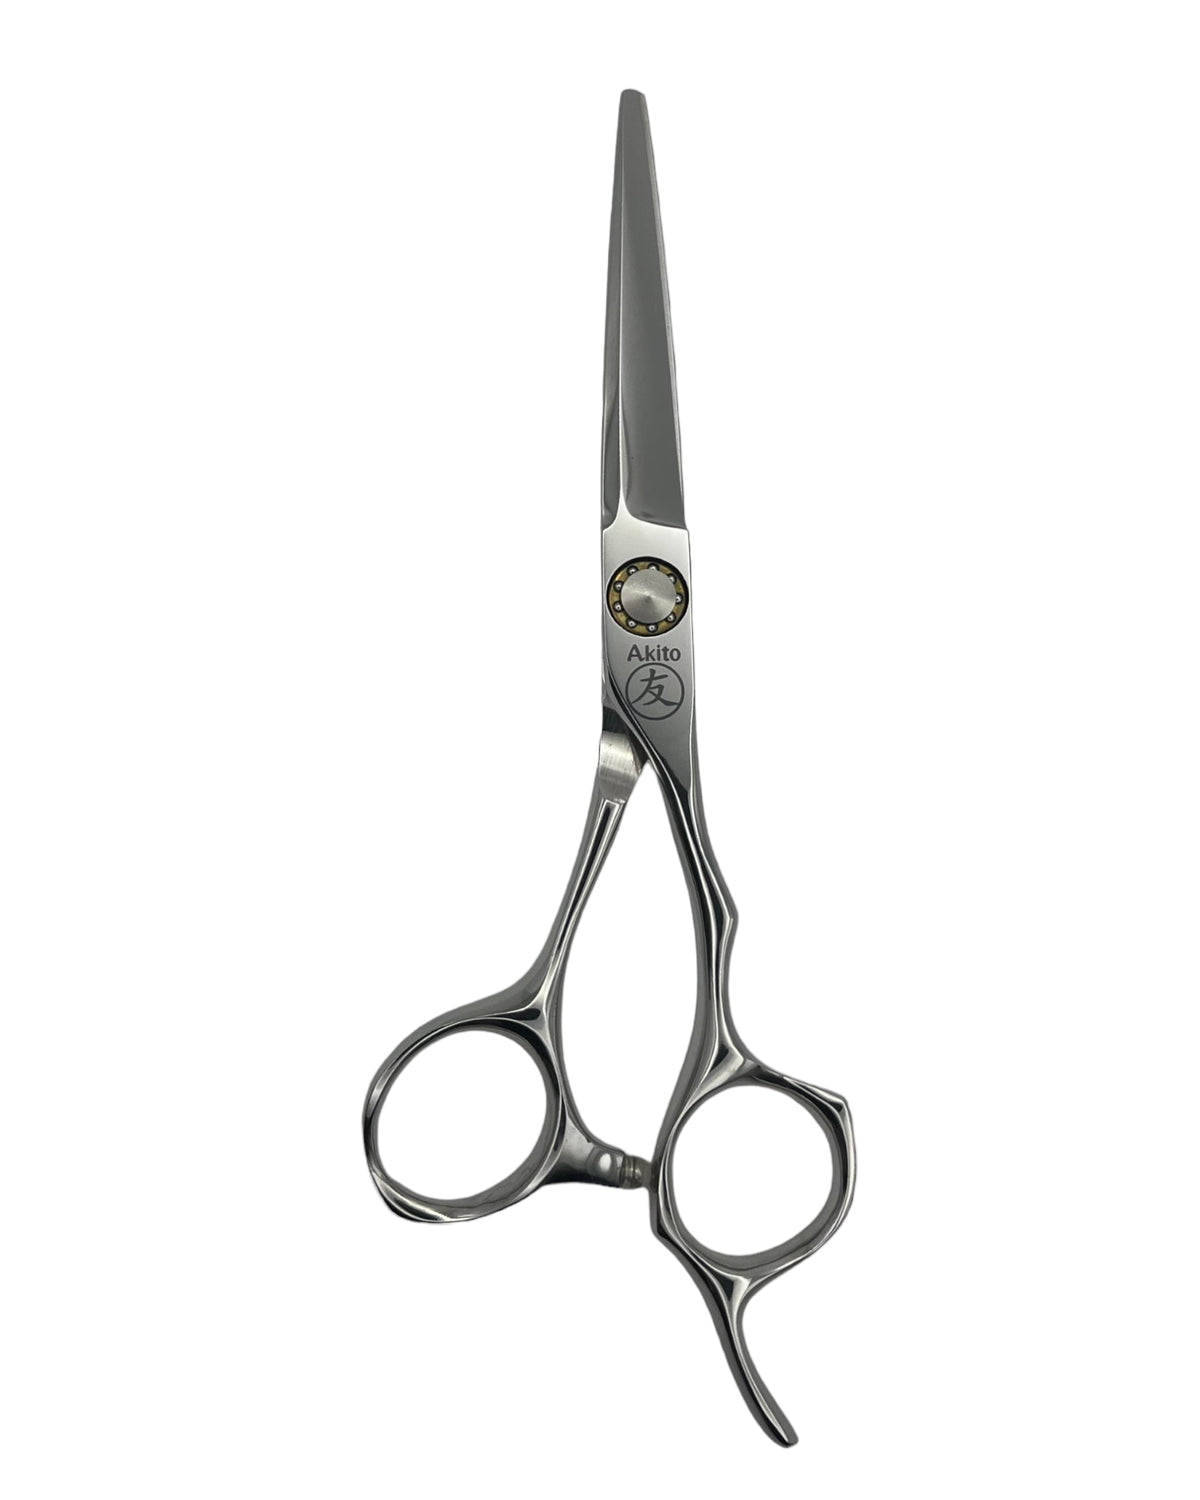 XX04 Hair cutting scissors 5.5 inch